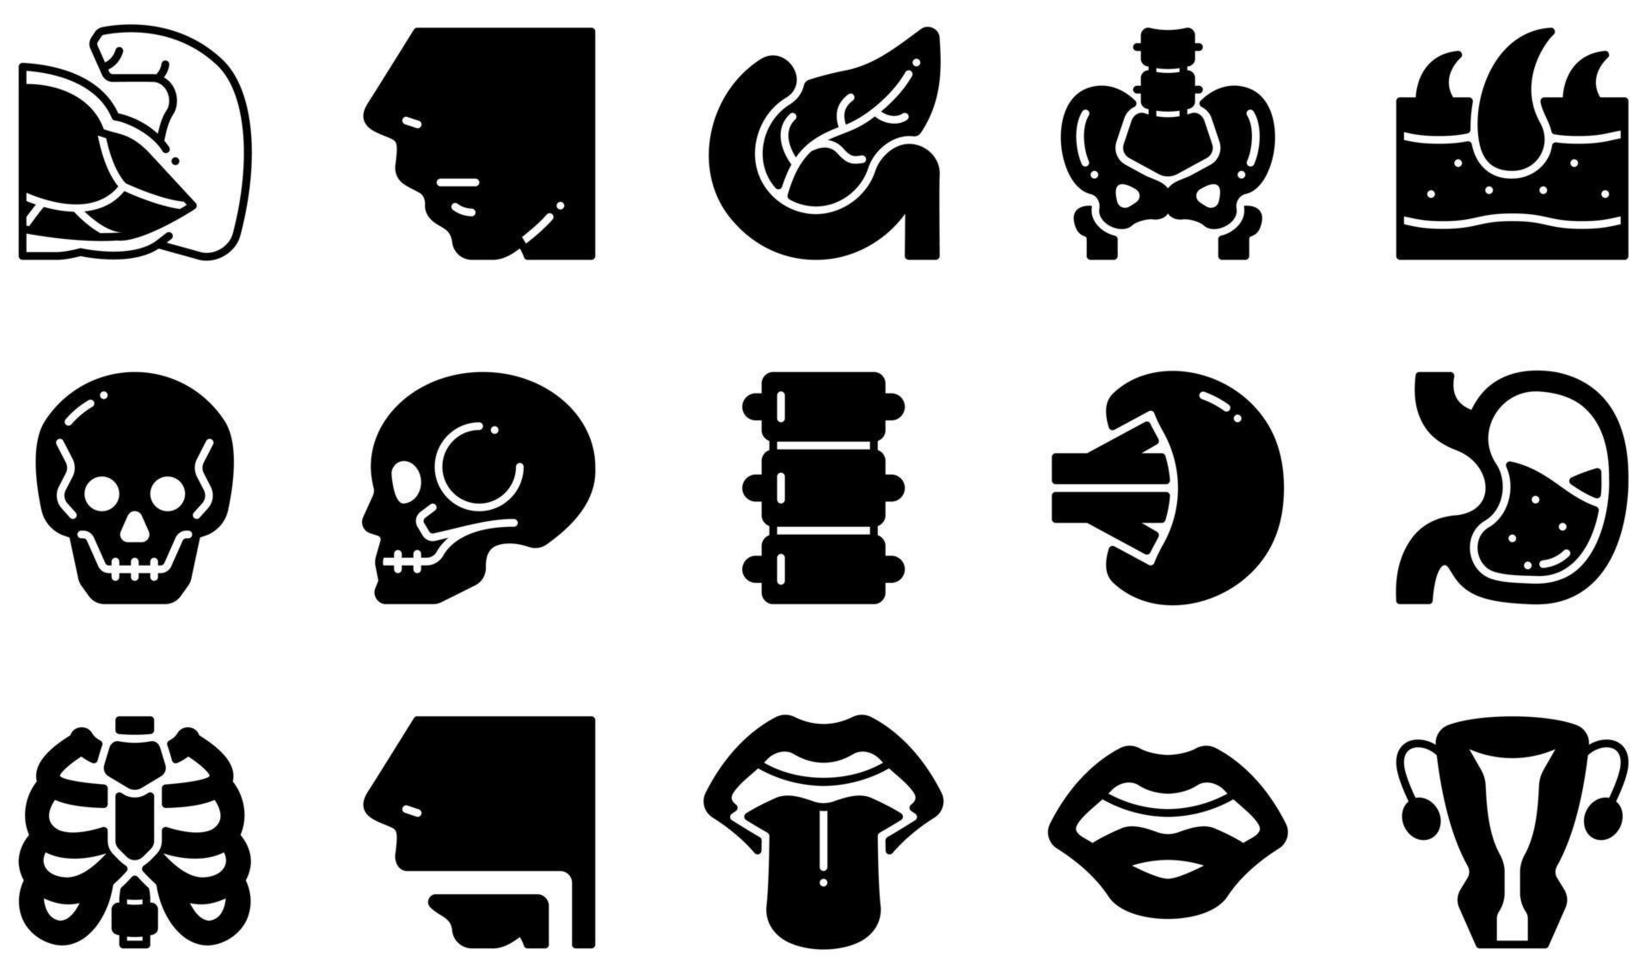 Reihe von Vektorsymbolen im Zusammenhang mit dem menschlichen Körper. enthält Symbole wie Muskeln, Nase, Bauchspeicheldrüse, Becken, Schädel, Haut und mehr. vektor